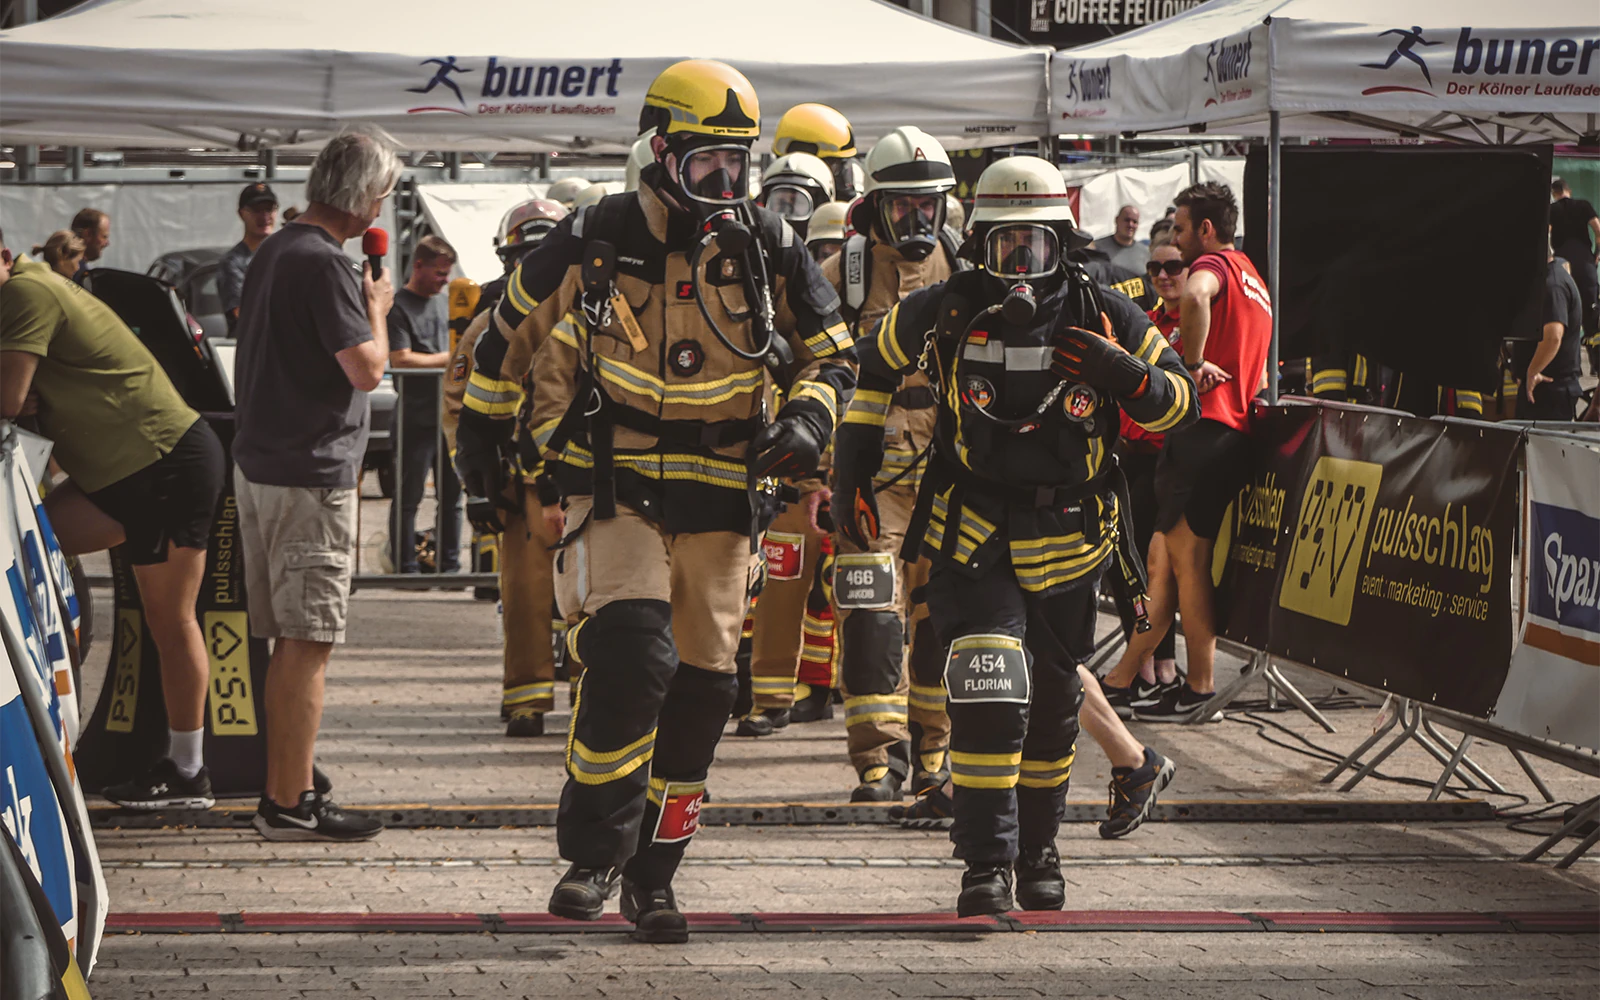 Für den guten Zweck an die eigenen Grenzen gehen: Neun Hückelhovener Feuerwehrmänner gründen Verein